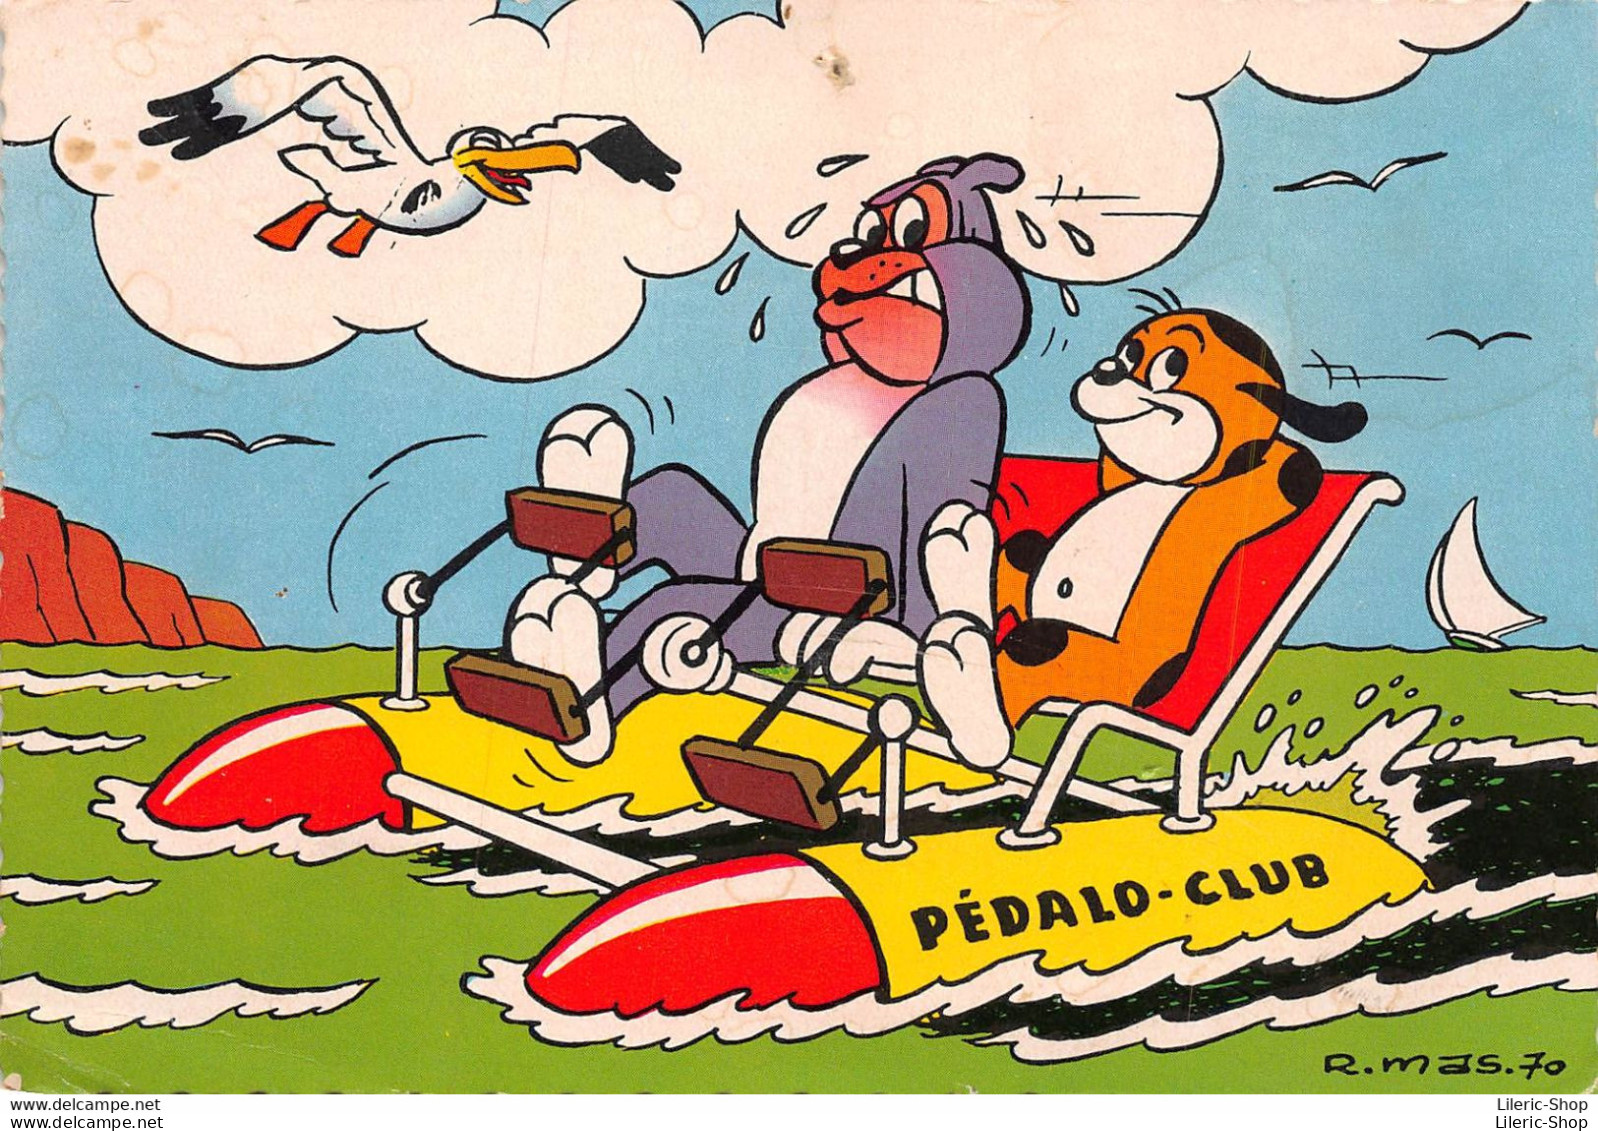 BANDES DESSINEES ( Pif Gadget ) PEDALO CLUB ... CPSM Dentelée GF ( Illustration R. MAS 1970 ) - Comicfiguren